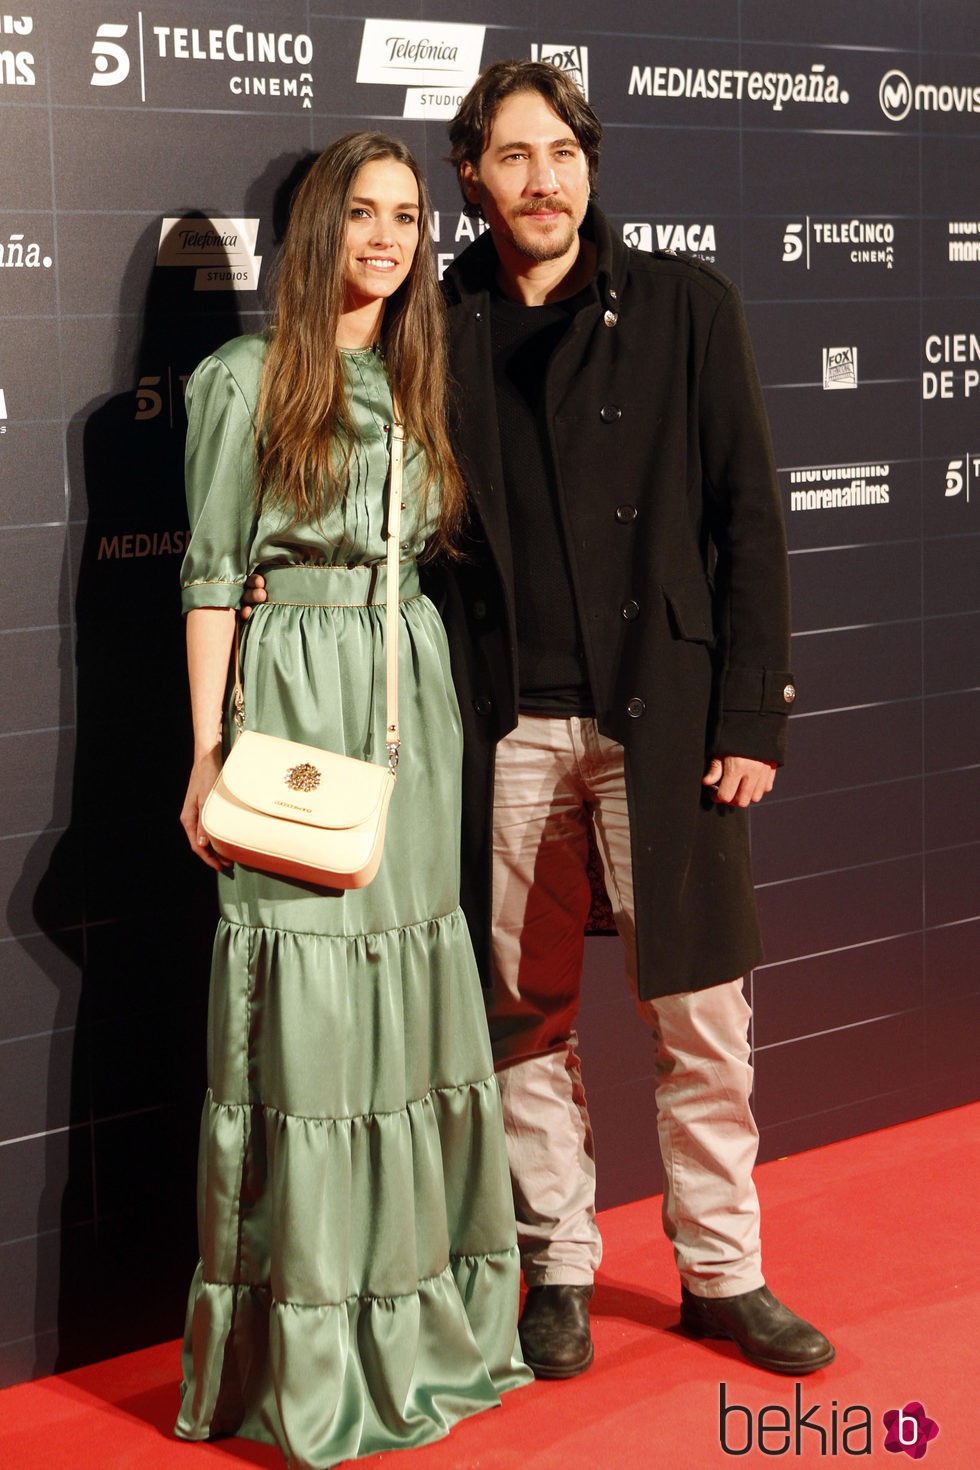 El actor Alberto Ammann y su pareja Clara Méndez-Leite en el estreno de la película 'Cien años de perdón'